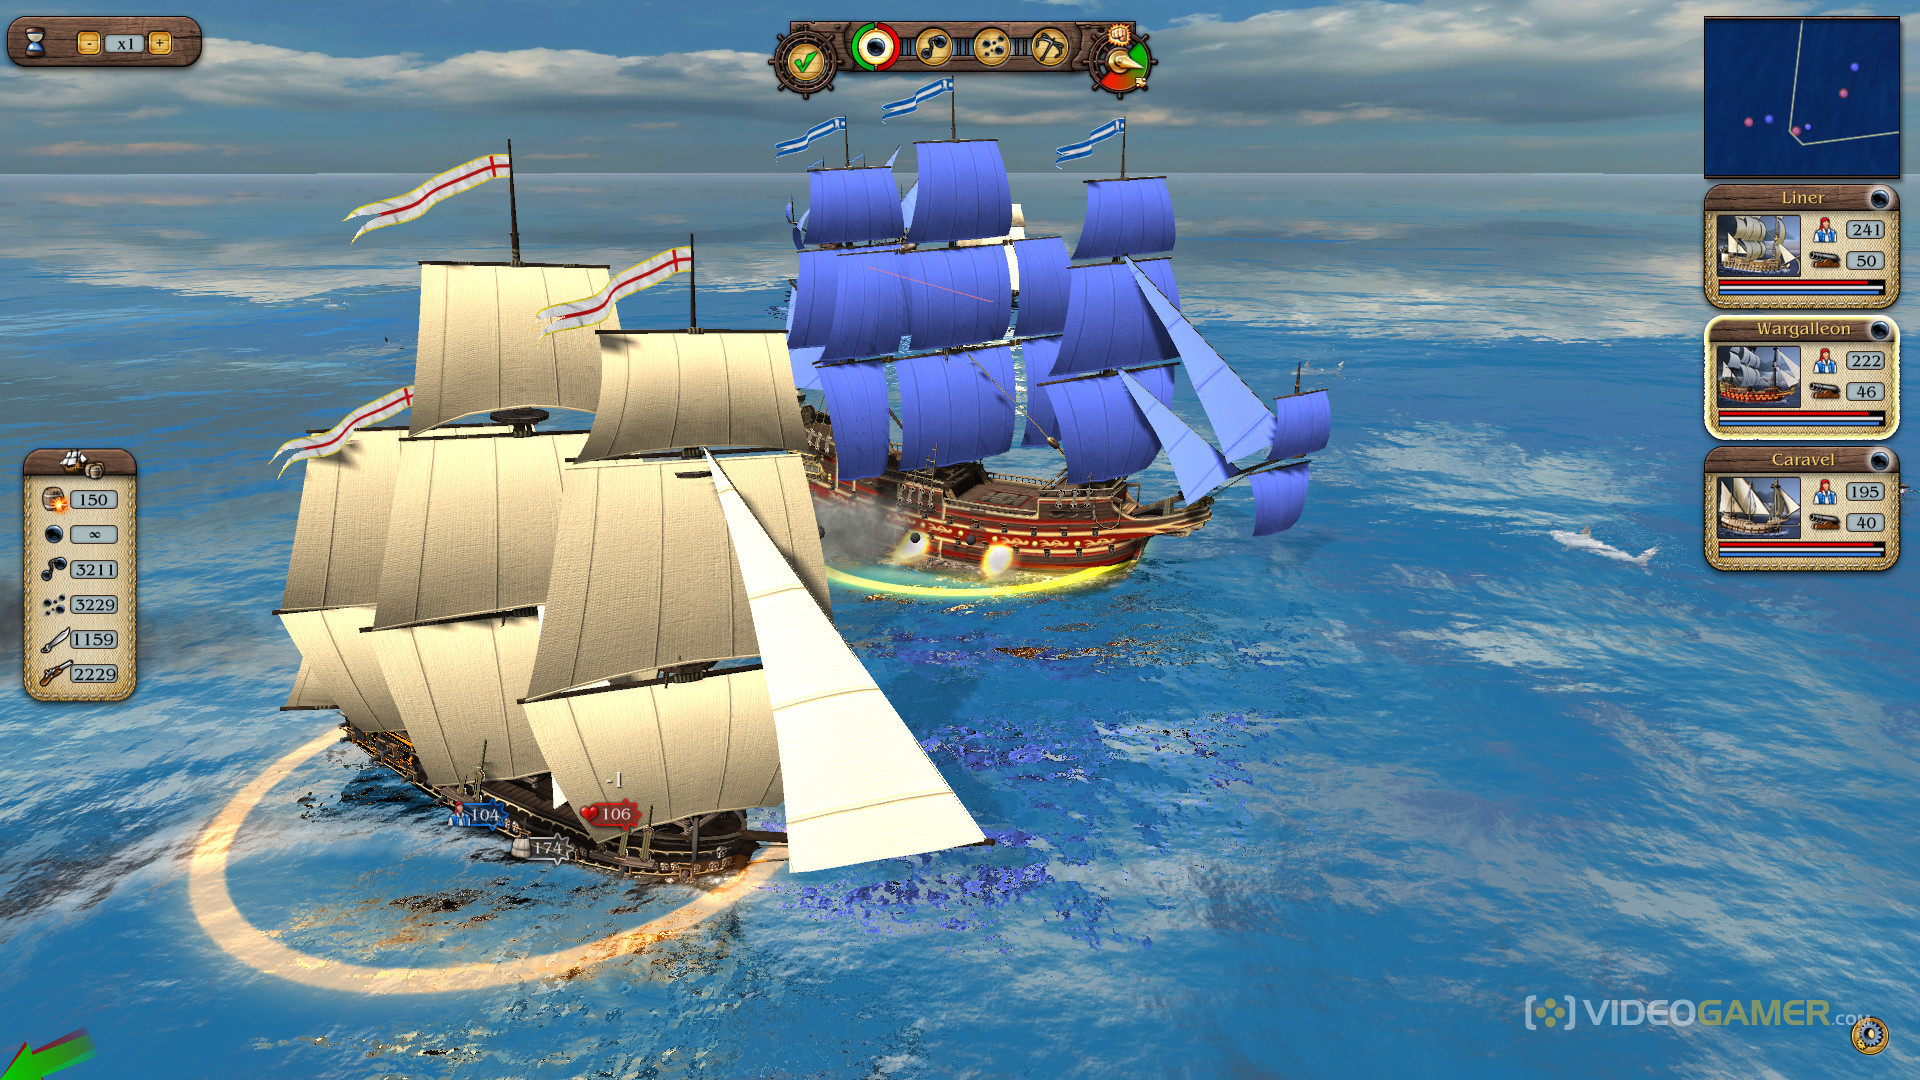 port-royale-3-pirates-merchants-details-launchbox-games-database